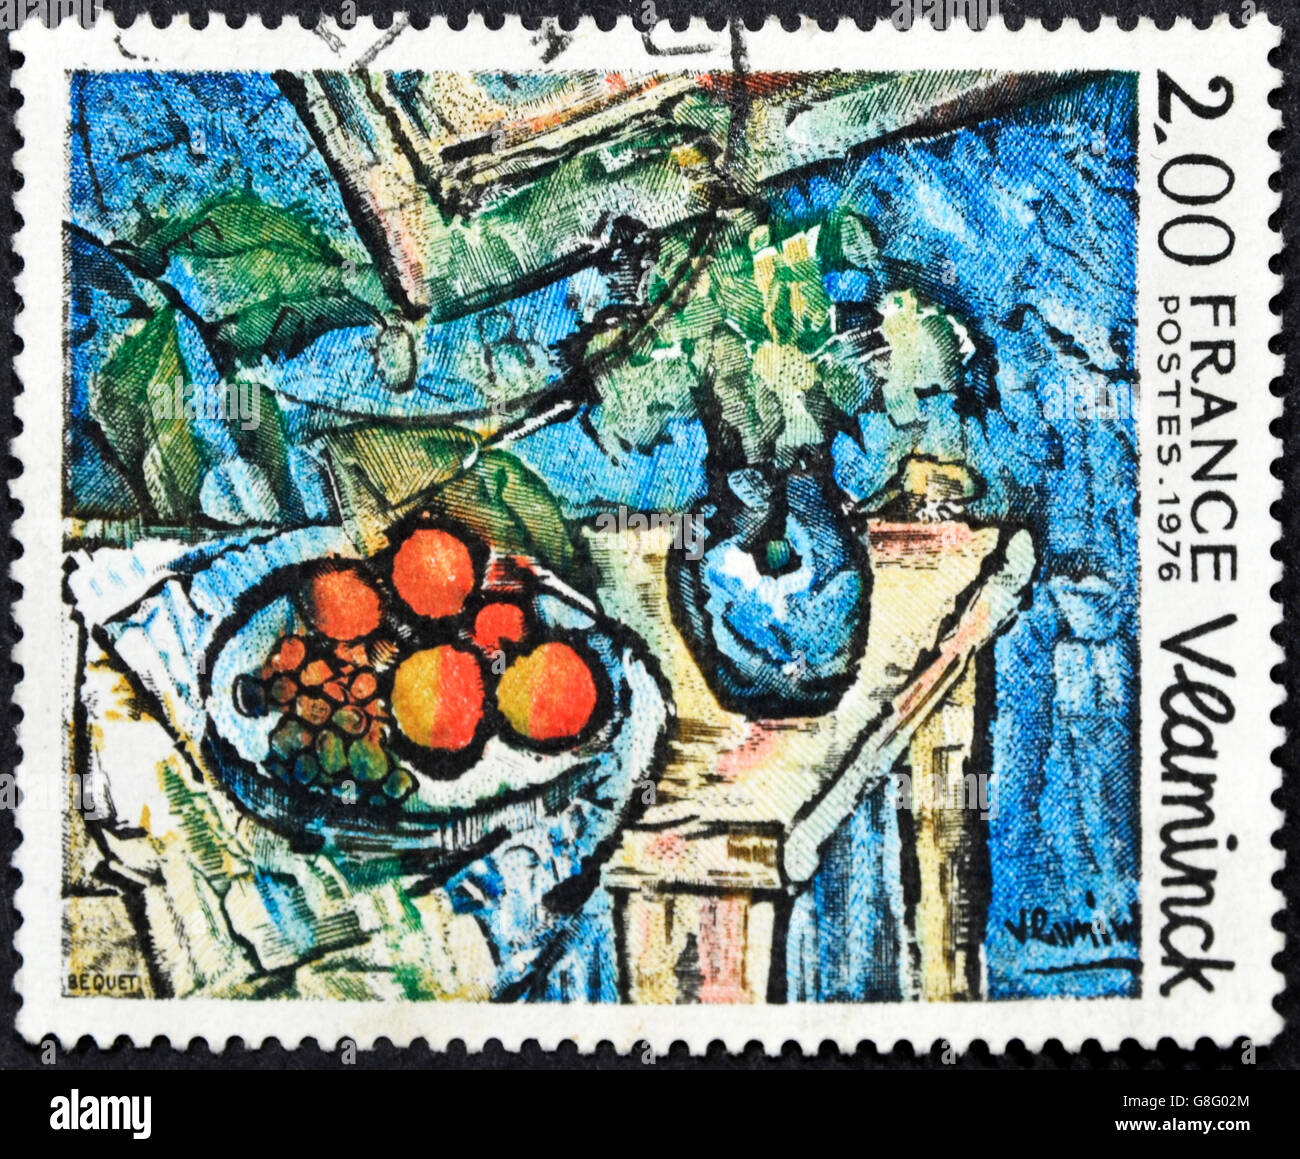 FRANCE - circa 1976 : timbre imprimé en France montre la pièce "La Vie" peint par Maurice de Vlaminck, vers 1976 Banque D'Images